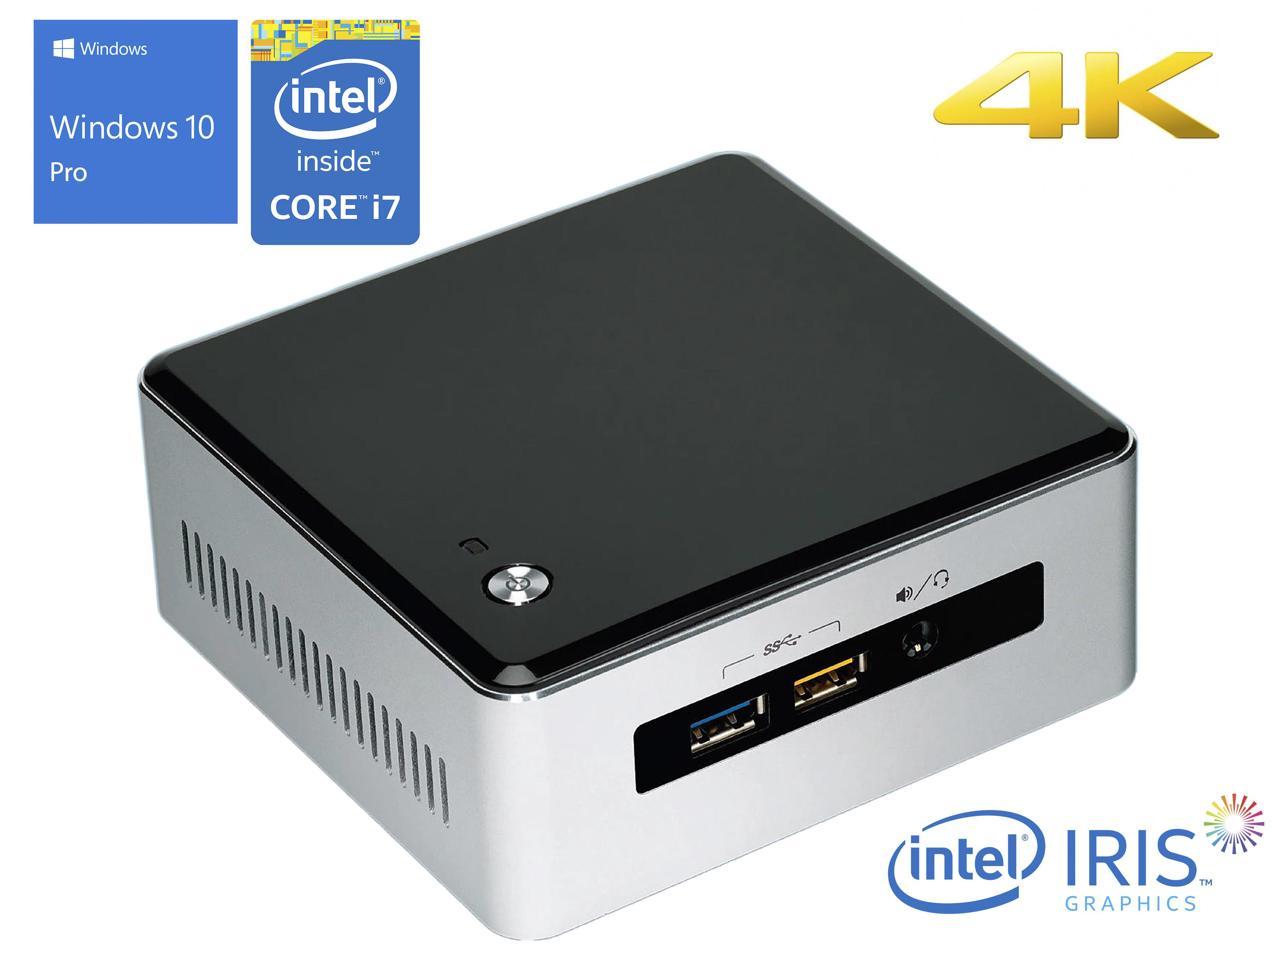 Intel NUC5i7RYH Mini PC, Intel Core i7-5557U Upto 3.40GHz, 16GB RAM, 256GB NVMe SSD + 1TB HDD, Mini HDMI, Mini DisplayPort, Wi-Fi, Bluetooth, Windows 10 Pro